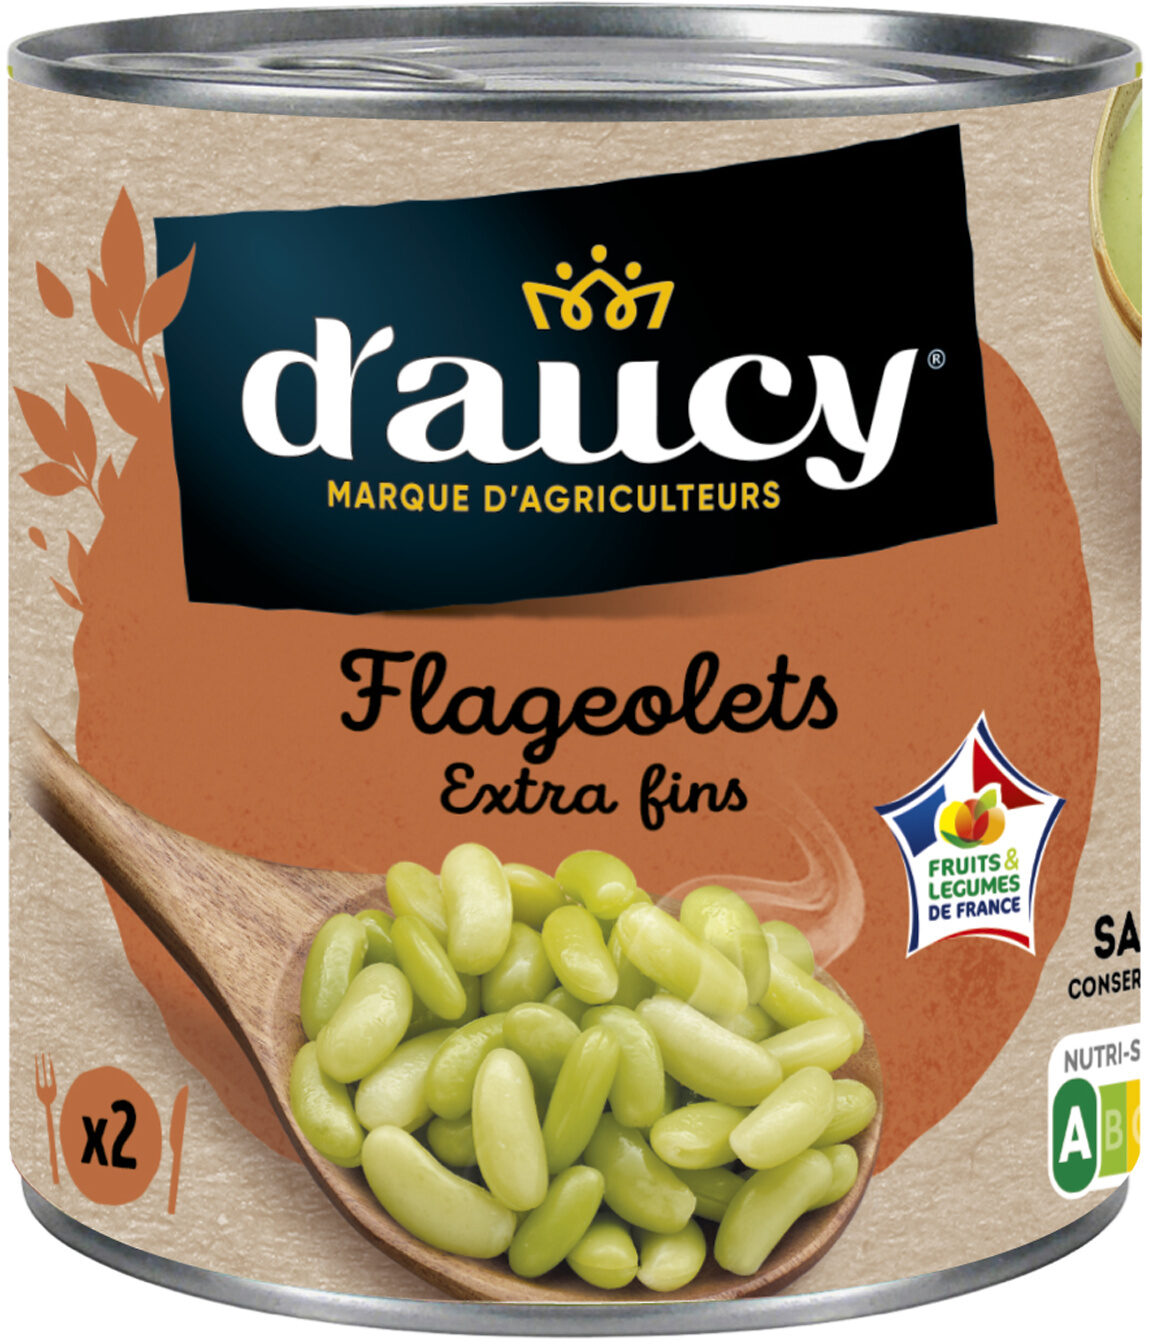 265g flageolets extra fins daucy - Produkt - fr